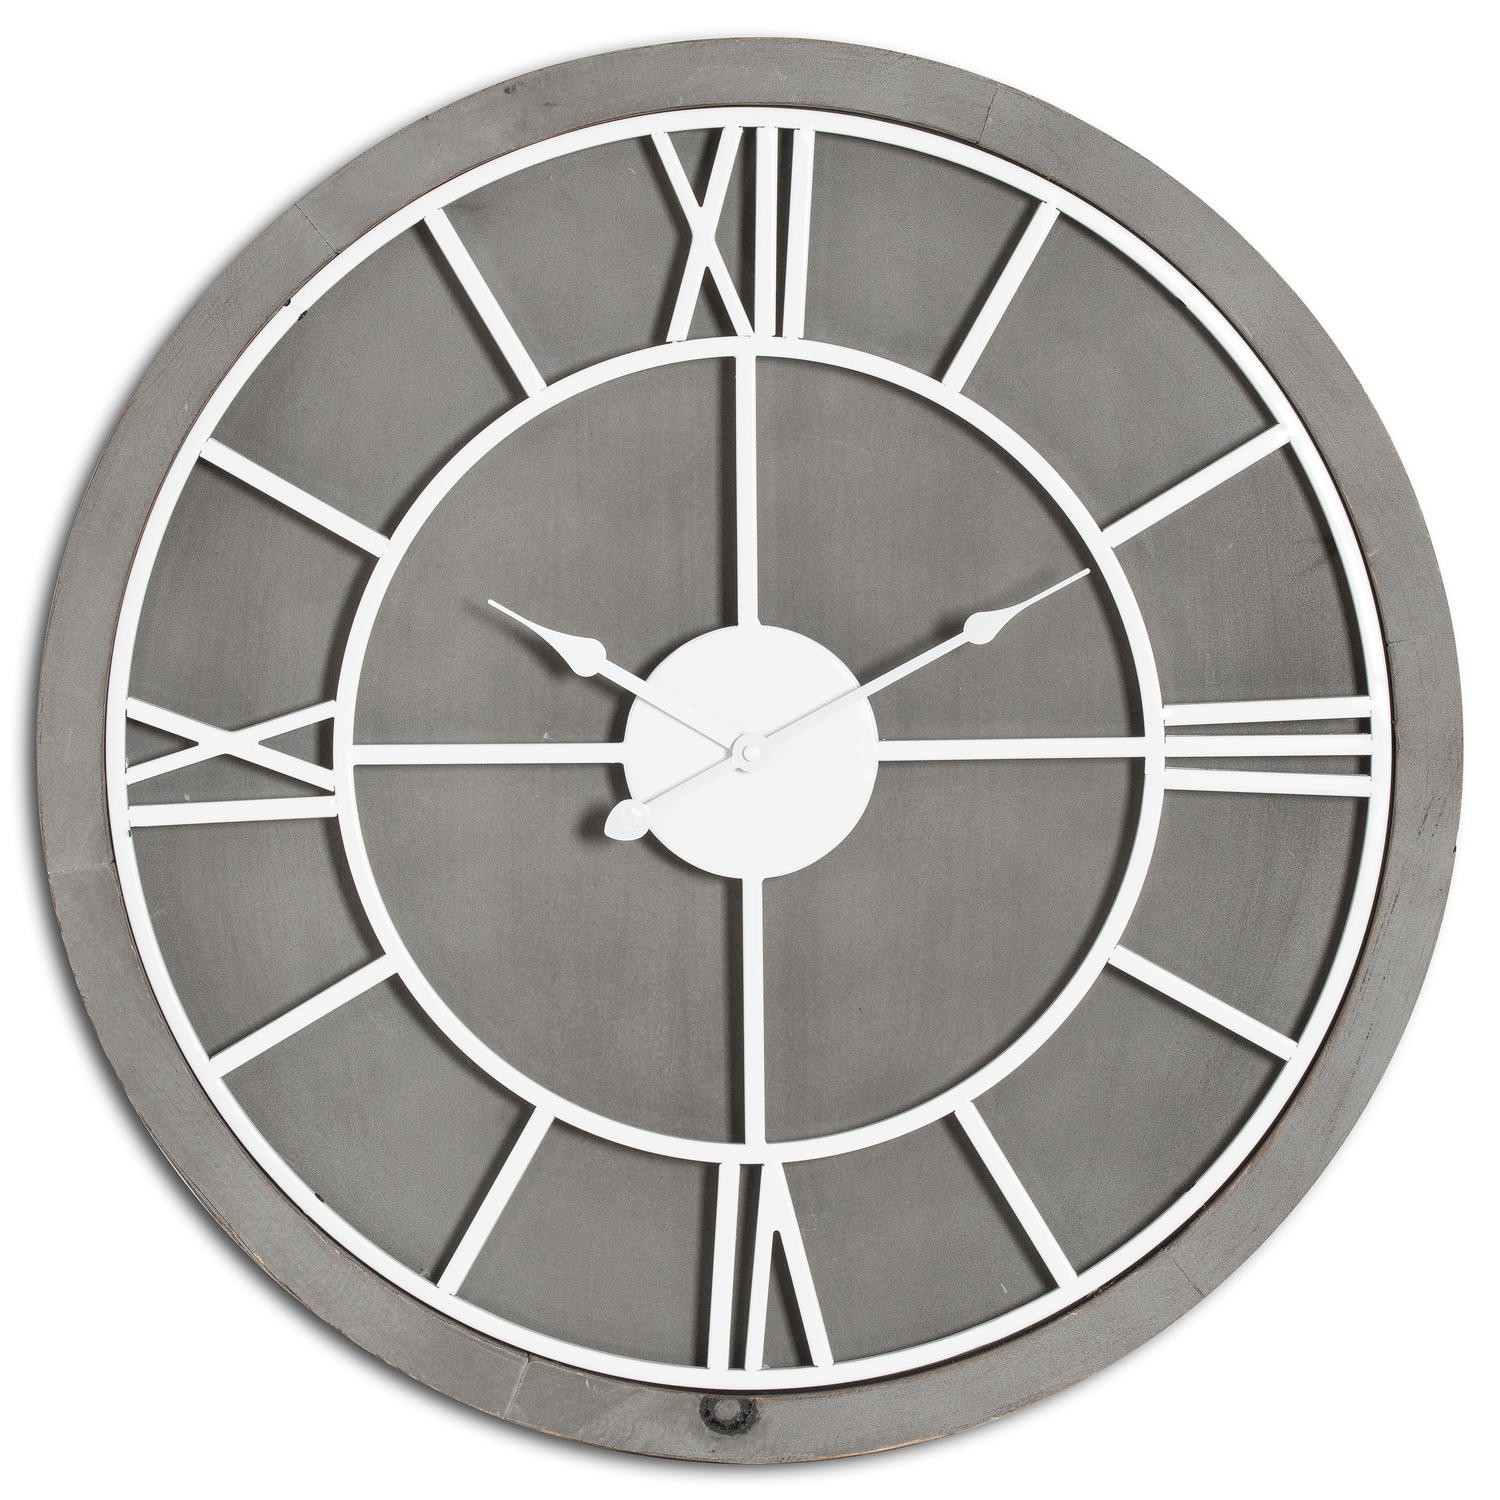 Estila Moderní jedinečné kulaté nástěnné hodiny Stormhill s římskými číslicemi stříbrné barvy 60cm